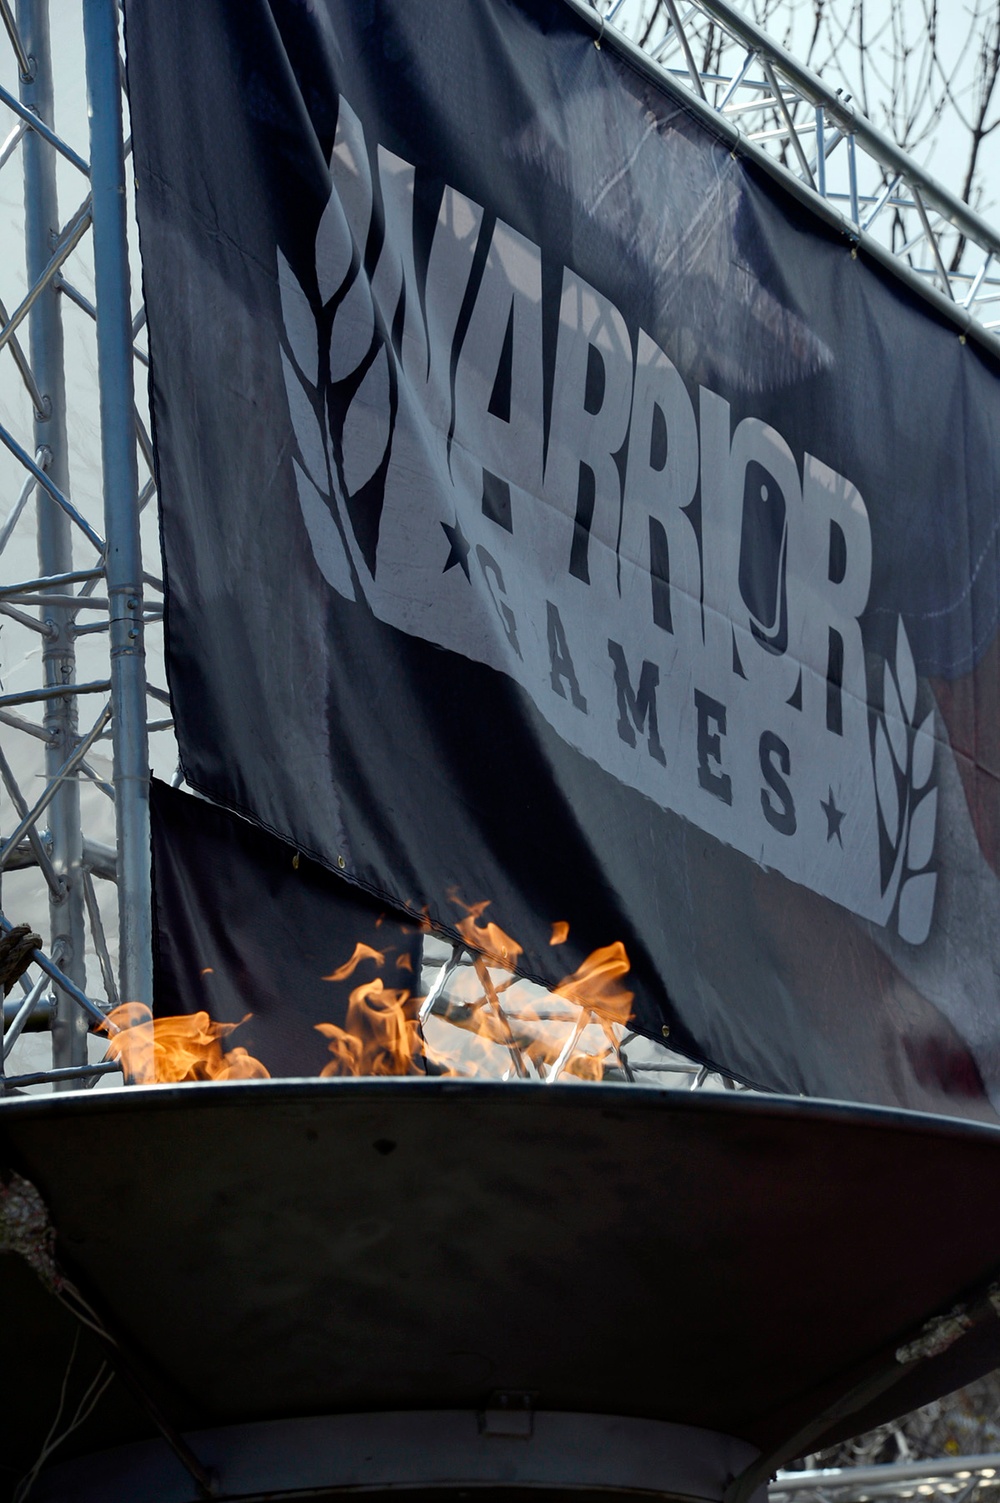 2013 Warrior Games